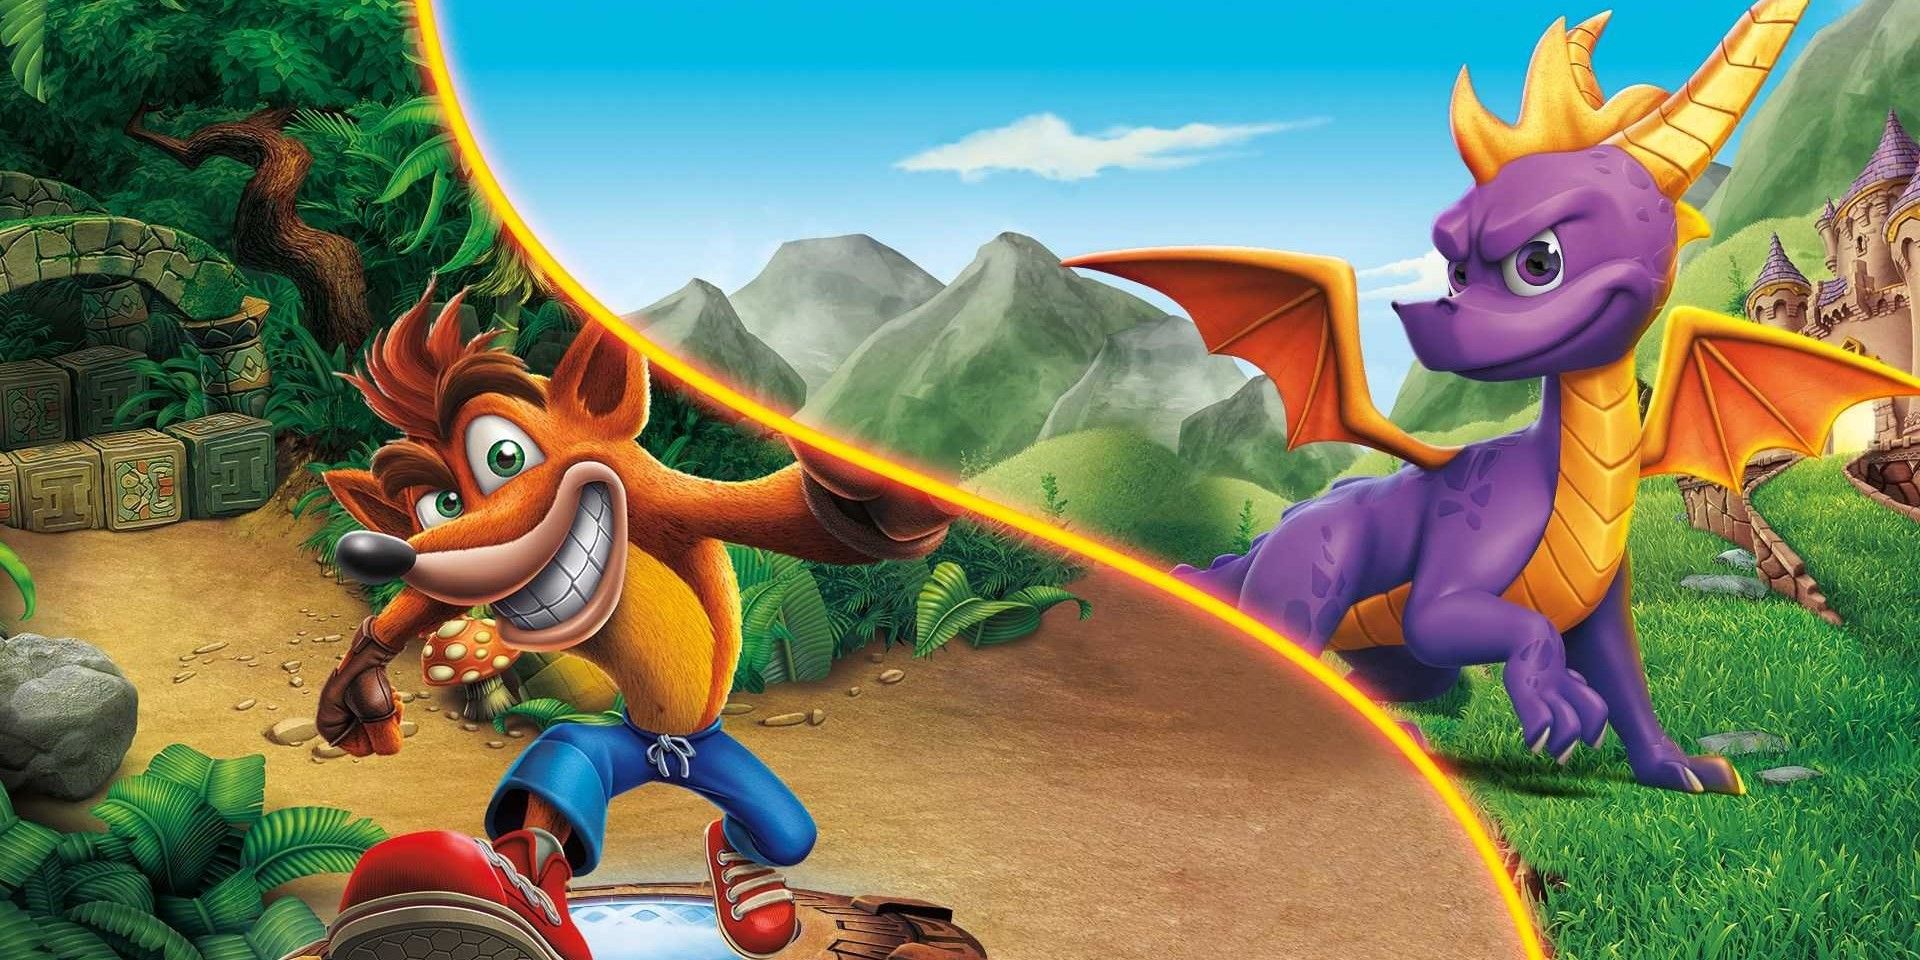 Estúdio de Crash Bandicoot dá indício de um novo game de Spyro the Dragon  para 2023